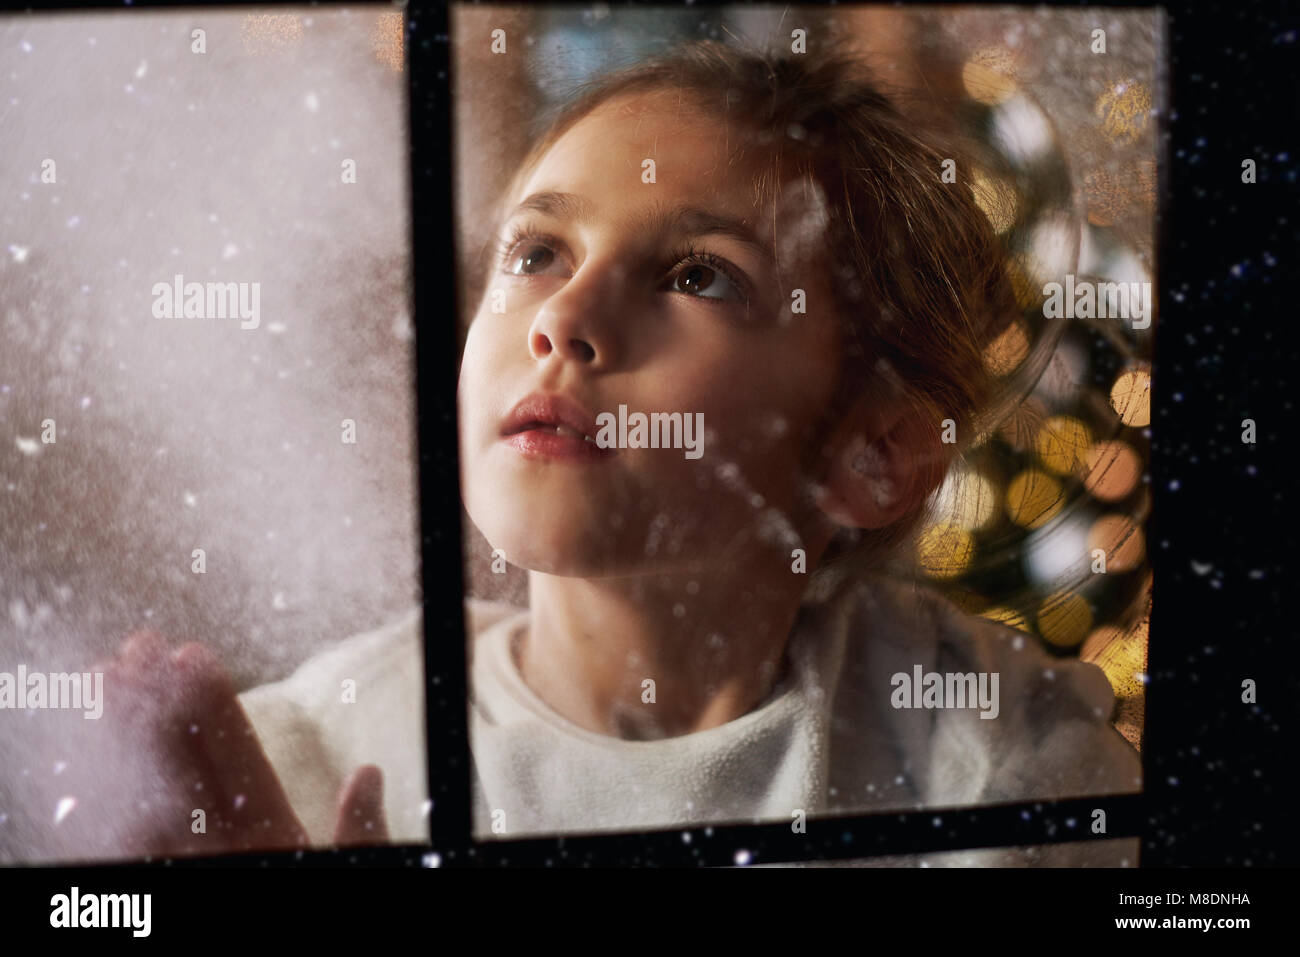 Ragazza giovane guardando fuori della finestra, albero di Natale in background dietro di lei, visto attraverso la finestra Foto Stock